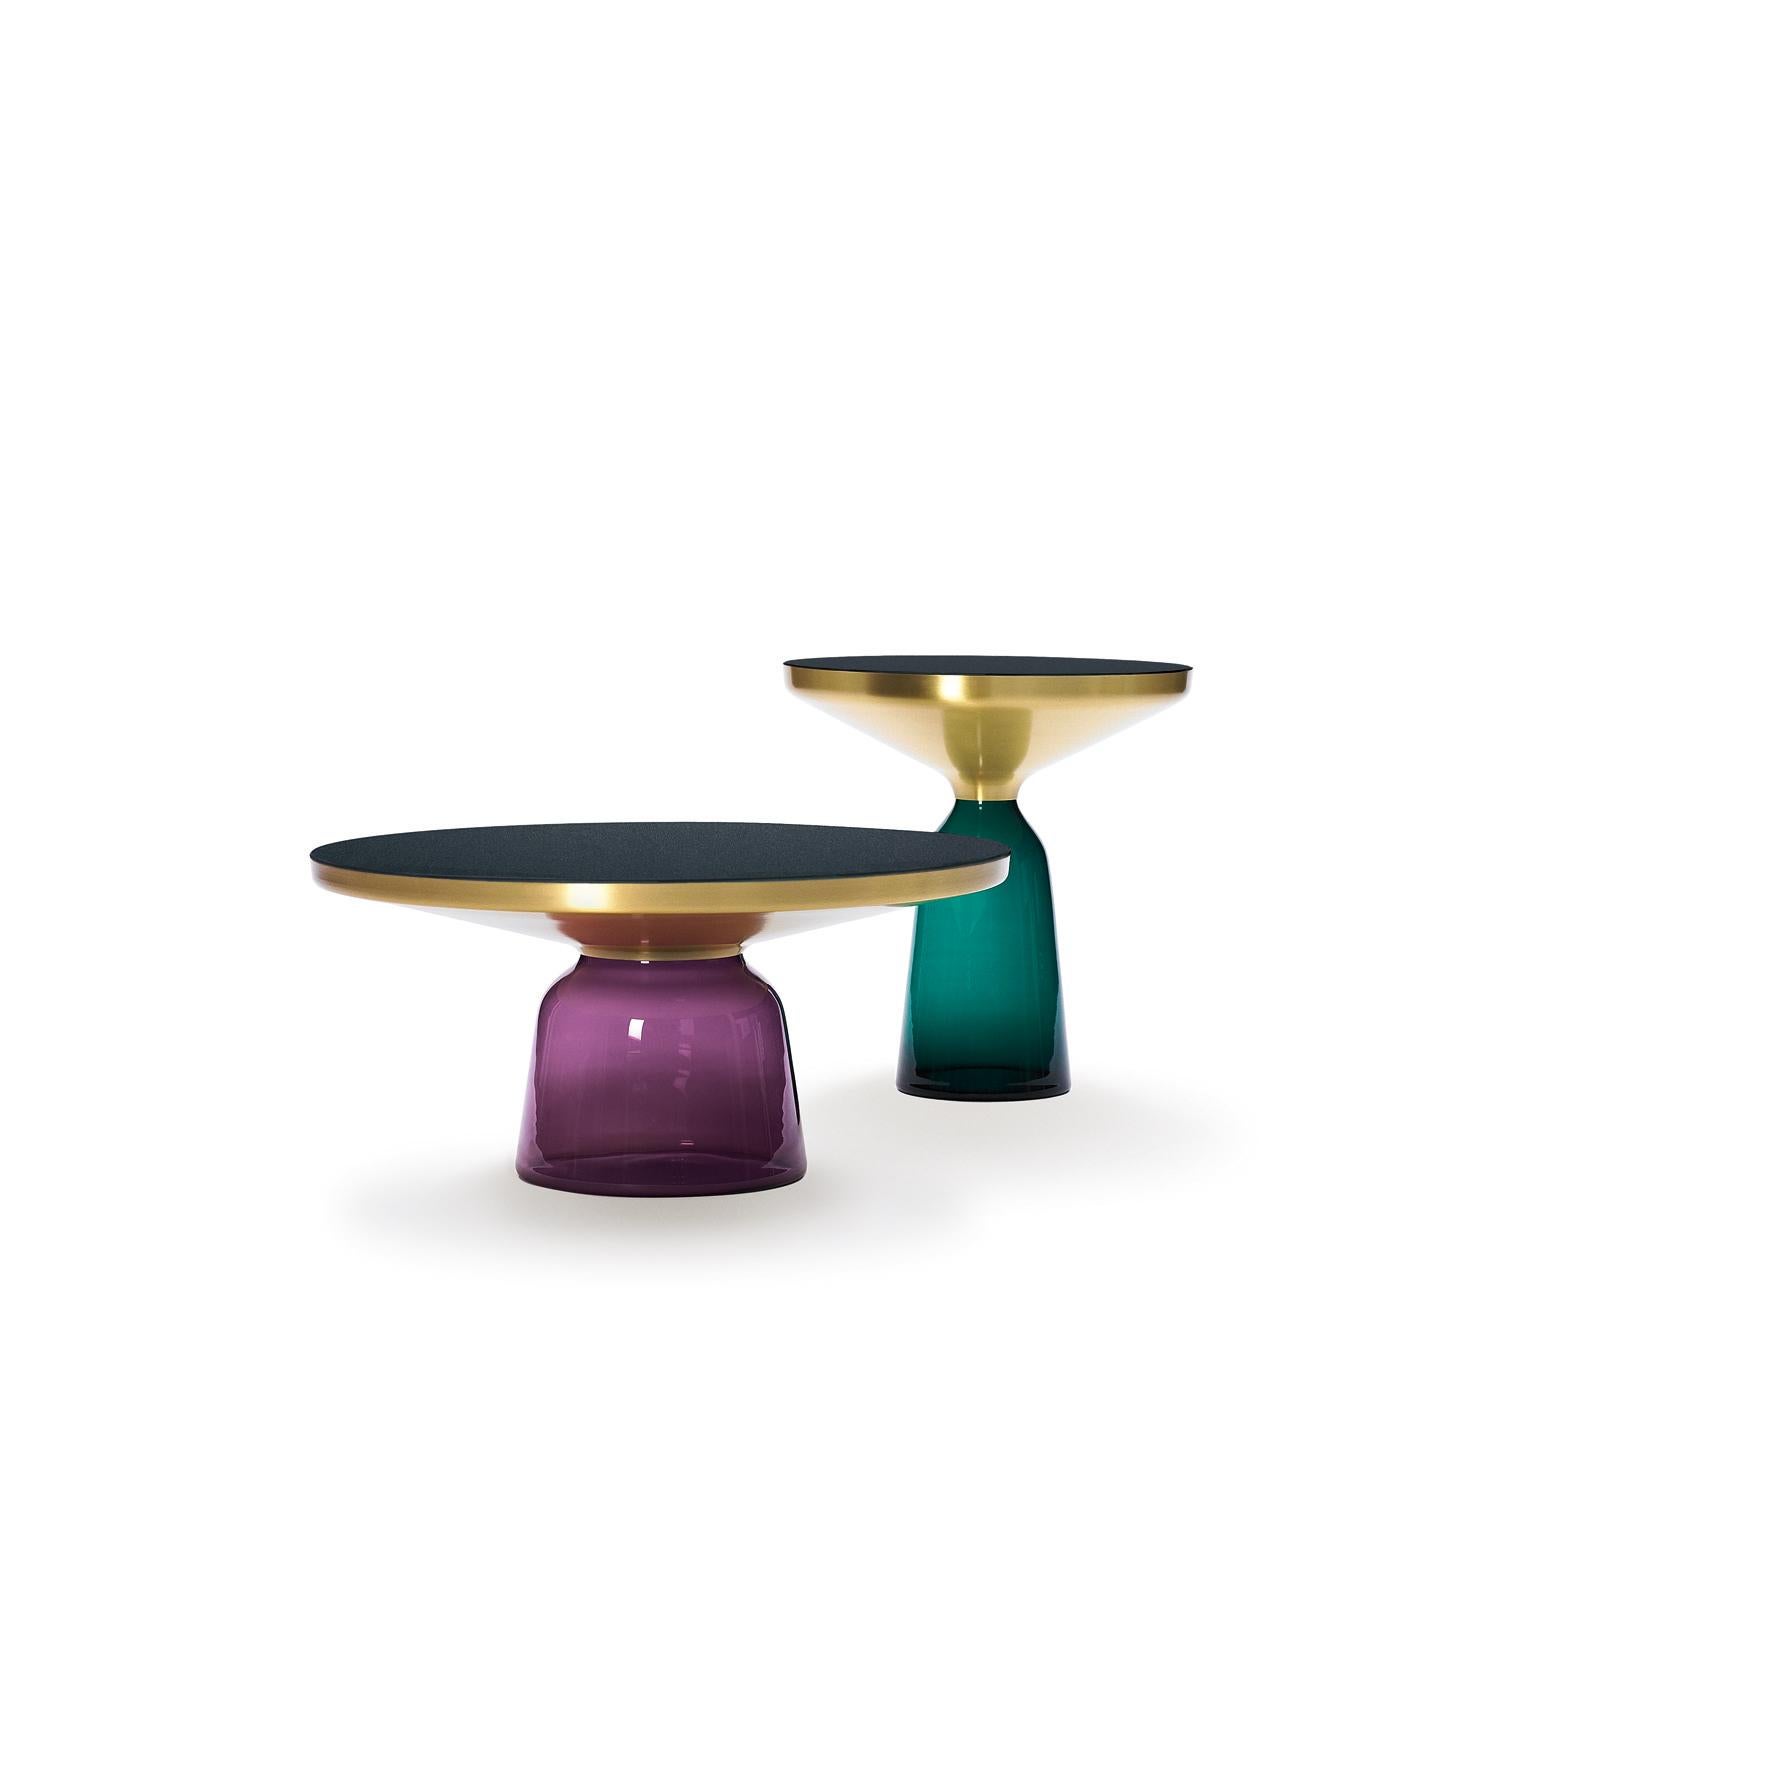 La table Bell de Sebastian Herkner bouleverse nos habitudes de perception en utilisant le matériau léger et fragile qu'est le verre comme base pour un plateau en métal qui semble flotter au-dessus. Soufflé à la main de manière traditionnelle à